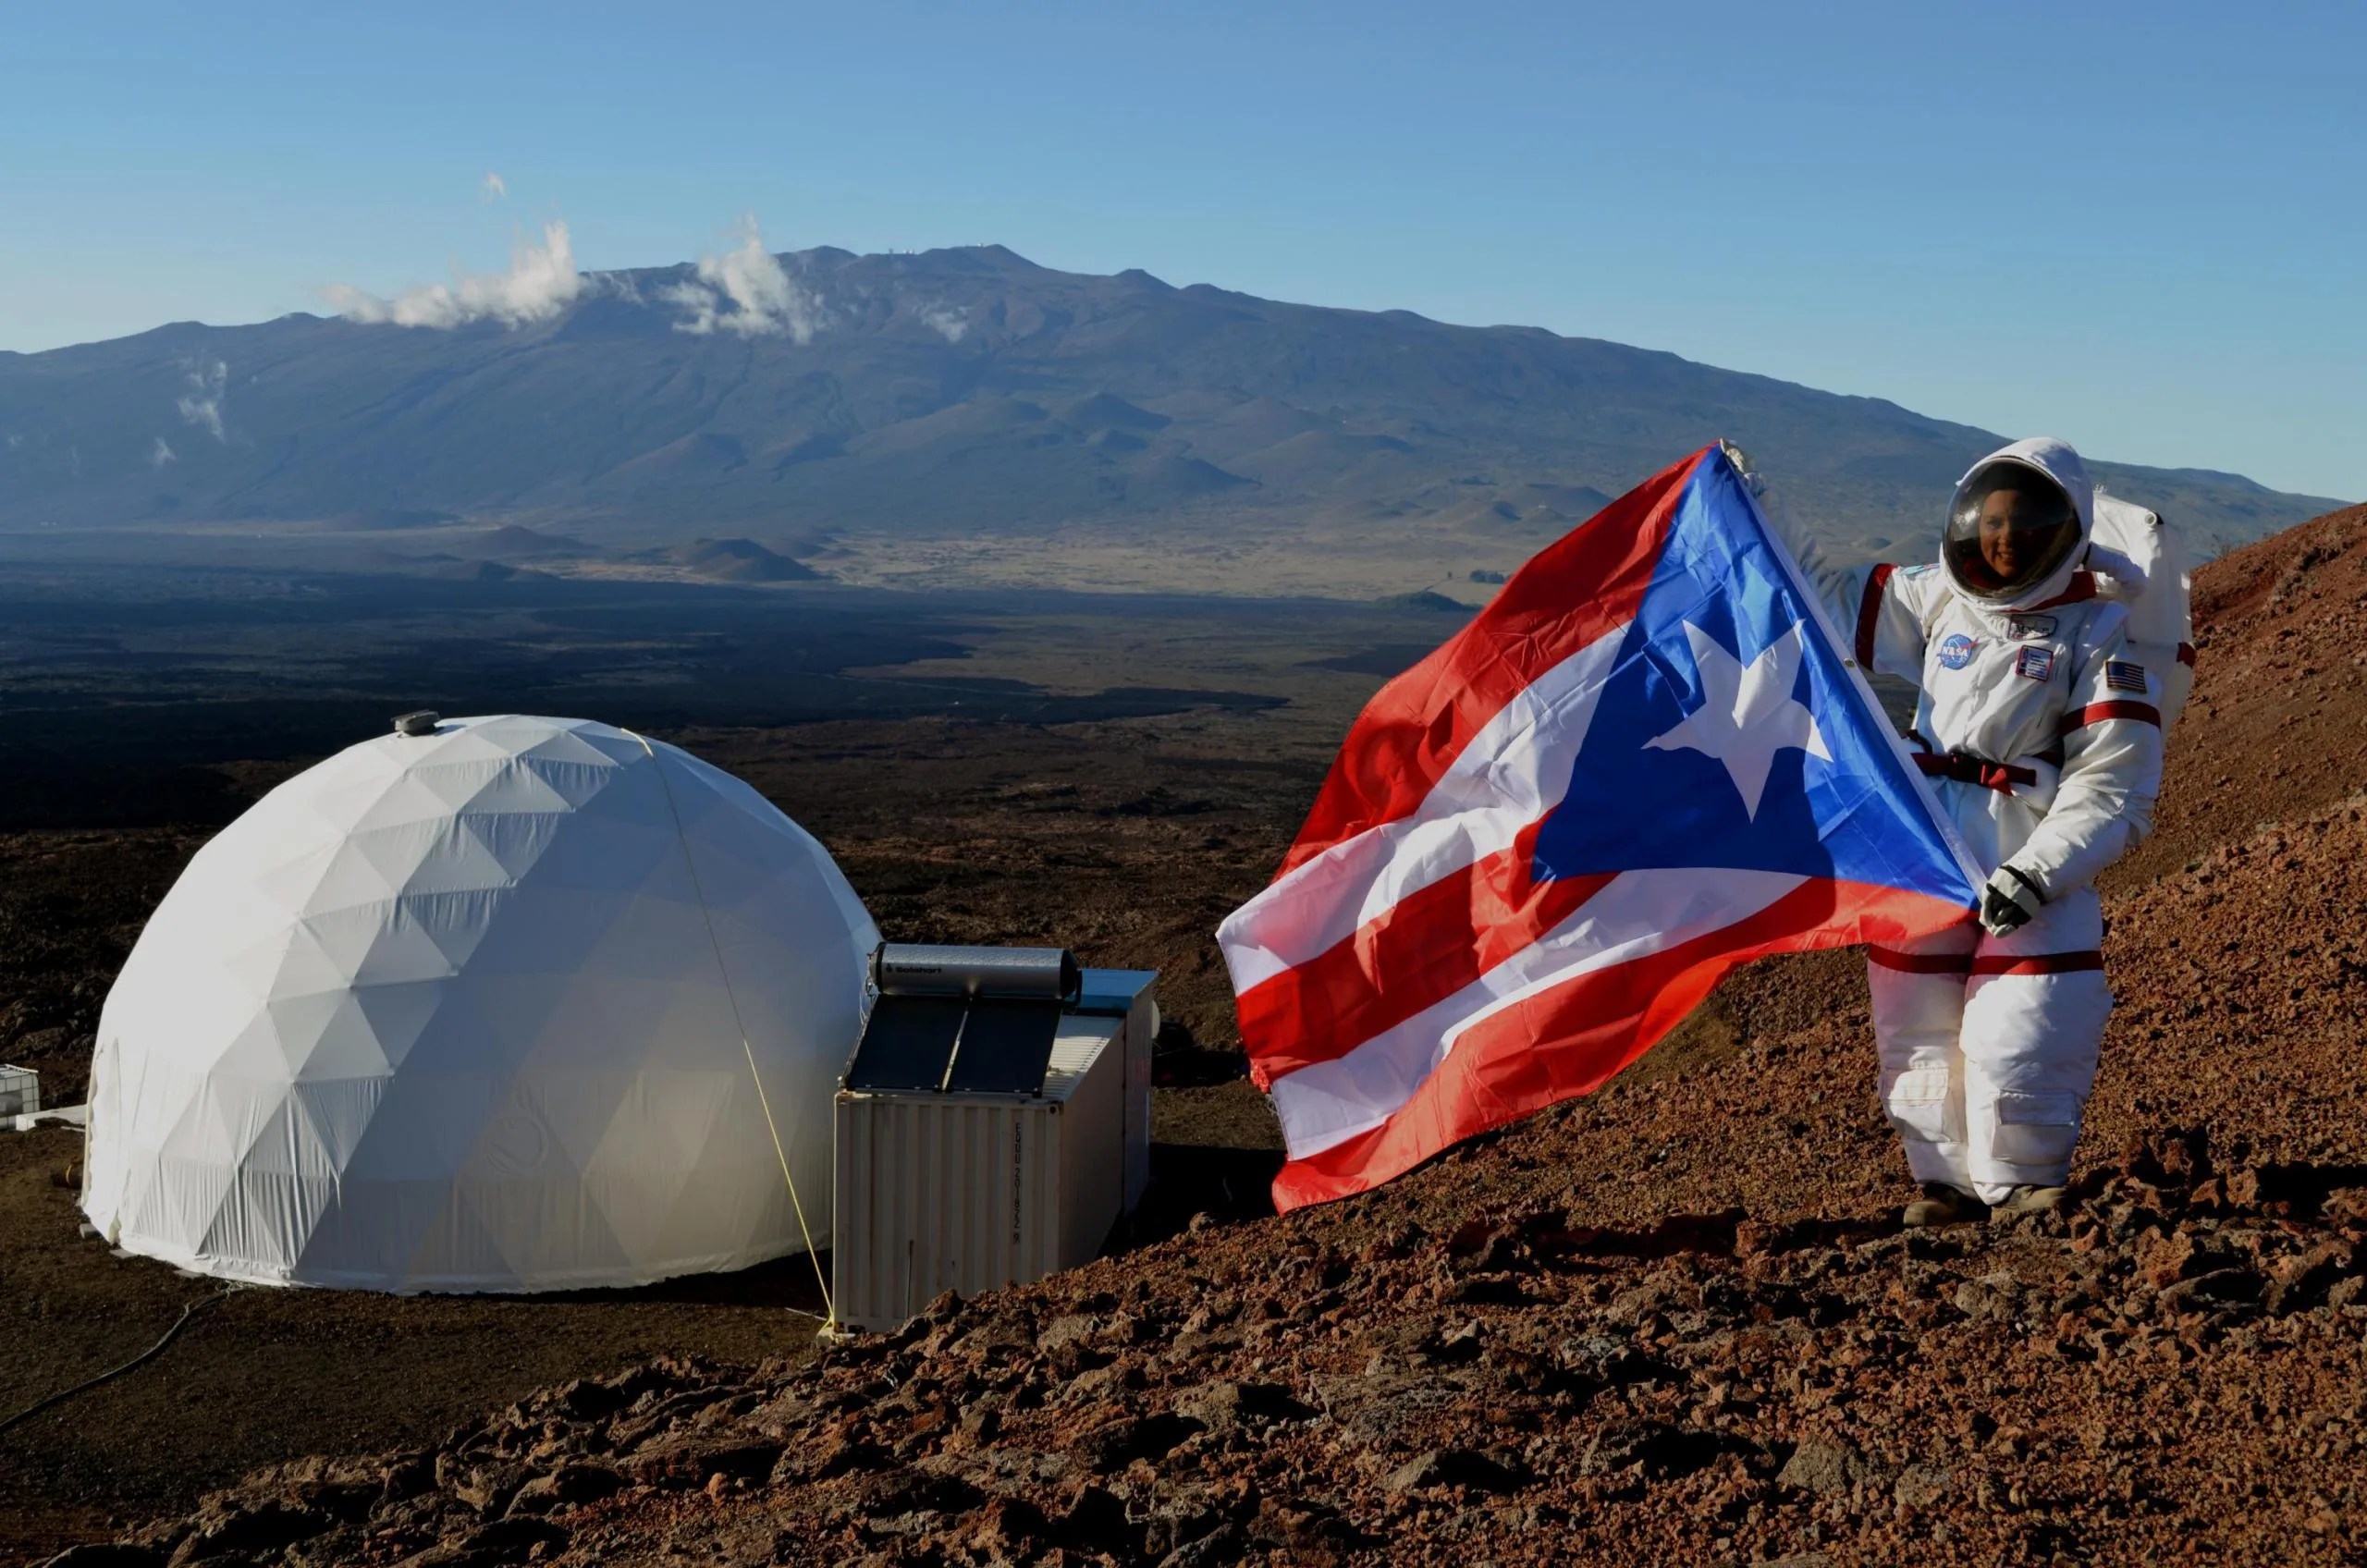 La puertorriqueña Yajaira Sierra-Sastre, del Centro de Investigación Glenn de la NASA en Cleveland, Ohio, junto al domo que fue su hogar durante cuatro meses. En 2013, Sierra-Sastre participó de una misión simulada en Marte del programa HI-SEAS, financiado por la NASA. Créditos: Dra. Sian Proctor.